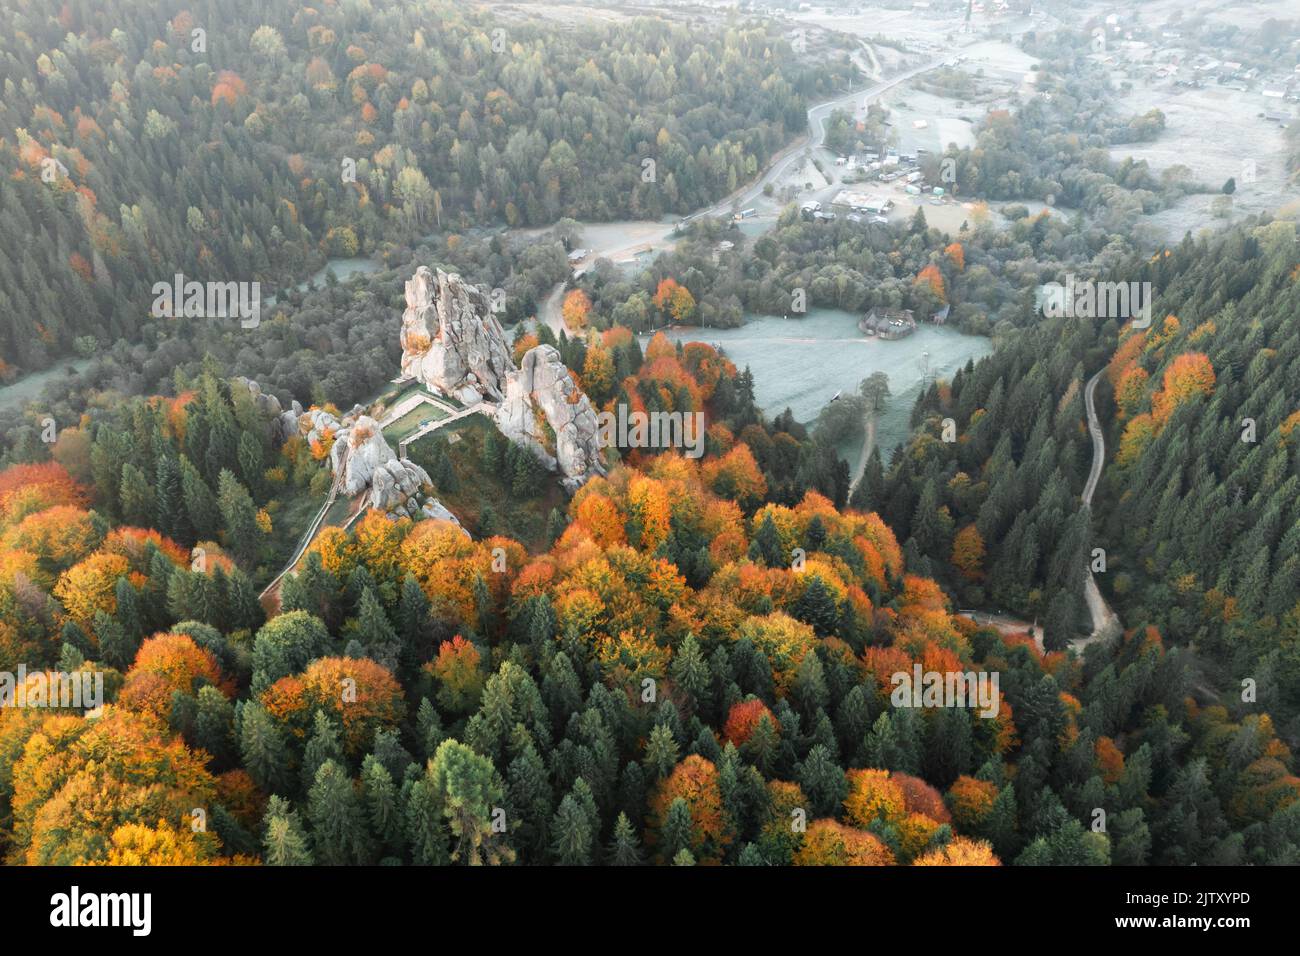 Vista aerea dal drone alla fortezza di Tustan - monumento archeologico e naturale di rilevanza nazionale nel villaggio di Urych in autunno, Ucraina. Fotografia di paesaggio Foto Stock